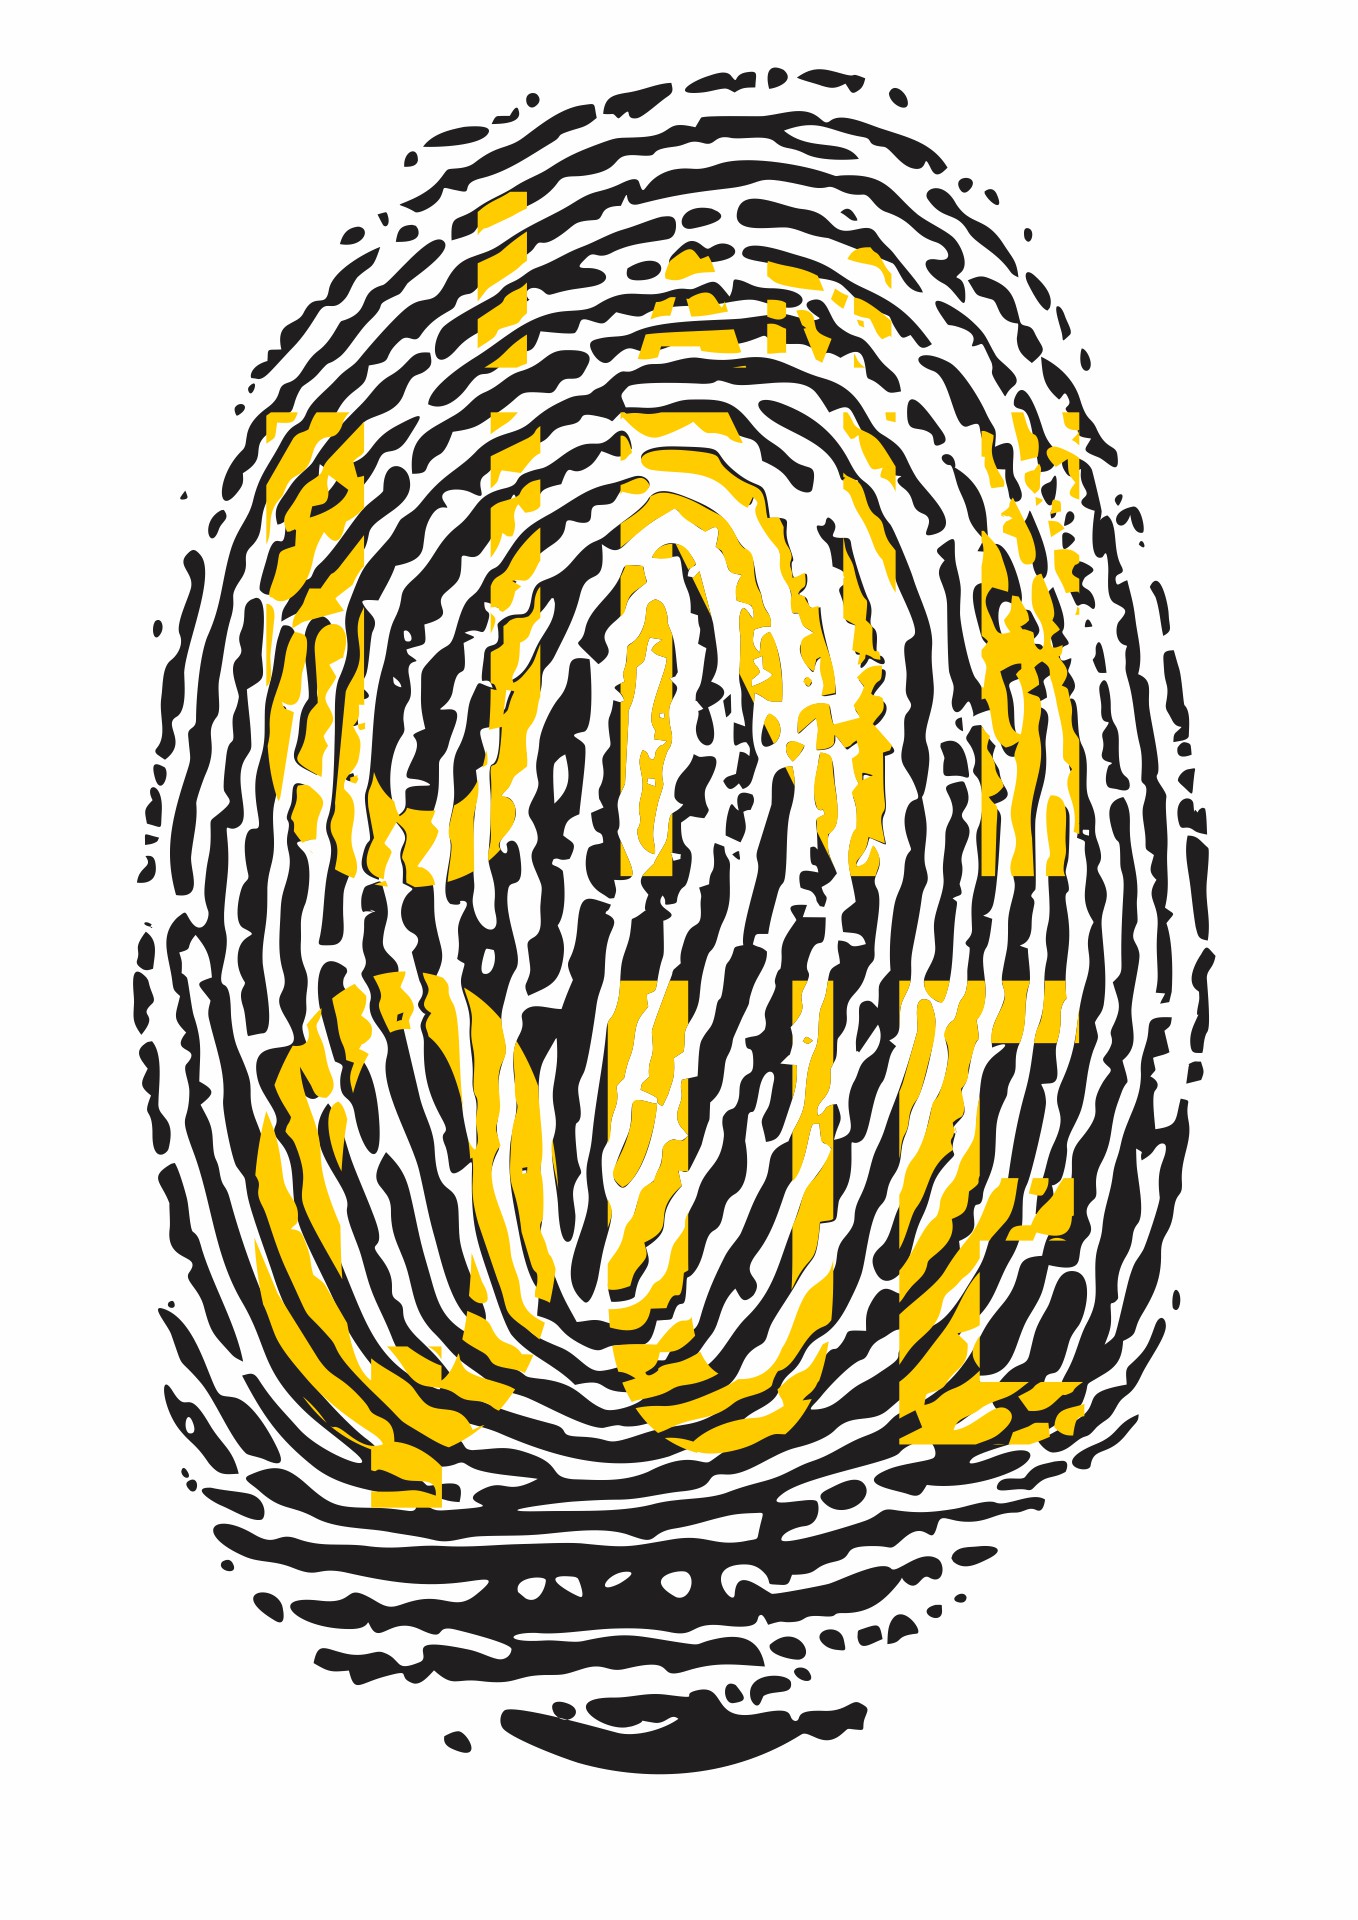 Cool Fingerprint Words Image